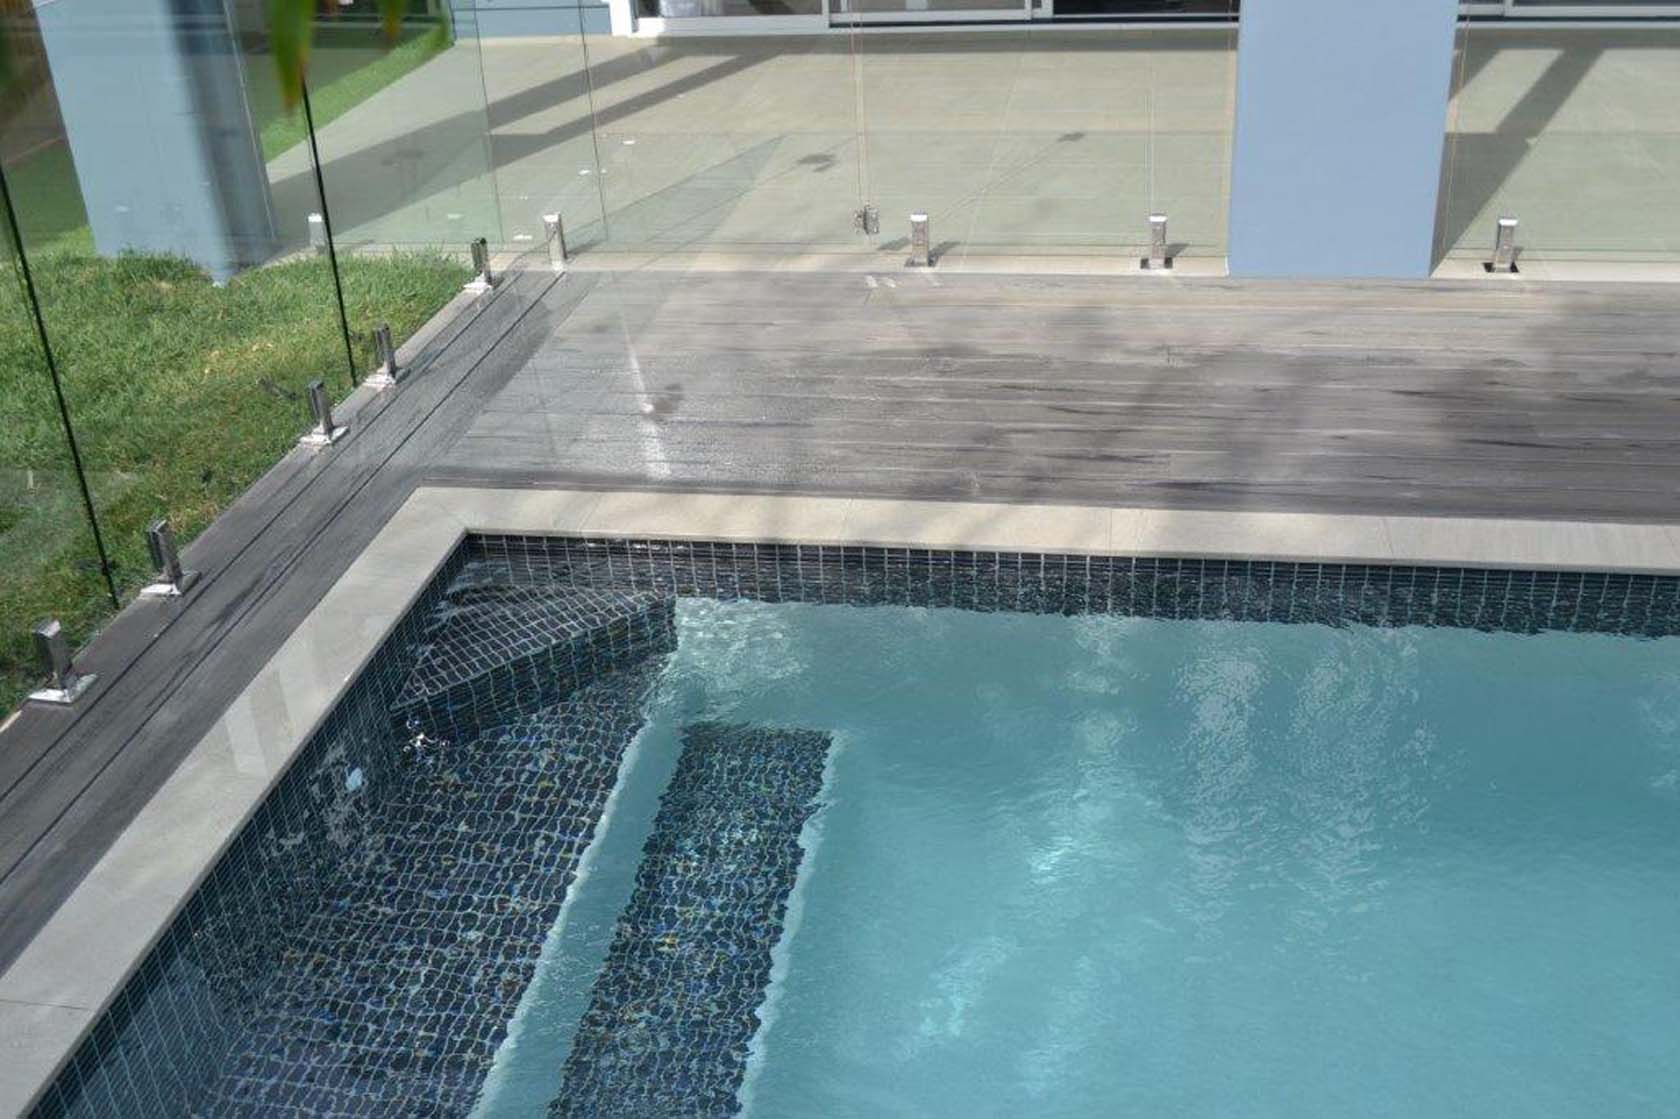 Mercury Porcealin pool coping with Dark Grey ceramic tile on waterline and steps